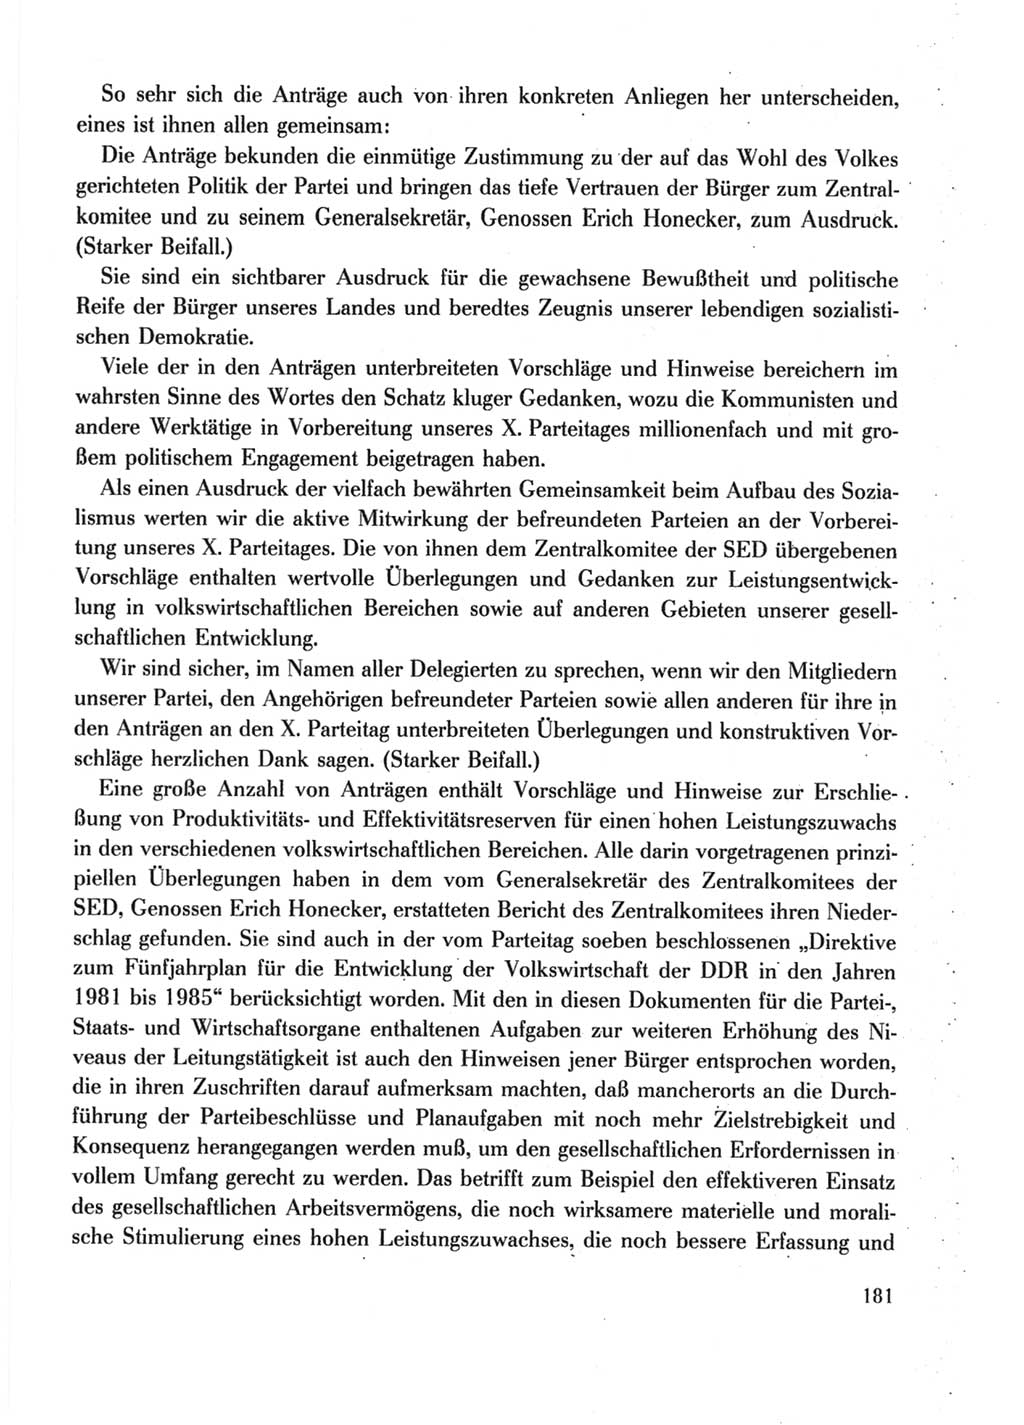 Protokoll der Verhandlungen des Ⅹ. Parteitages der Sozialistischen Einheitspartei Deutschlands (SED) [Deutsche Demokratische Republik (DDR)] 1981, Band 2, Seite 181 (Prot. Verh. Ⅹ. PT SED DDR 1981, Bd. 2, S. 181)